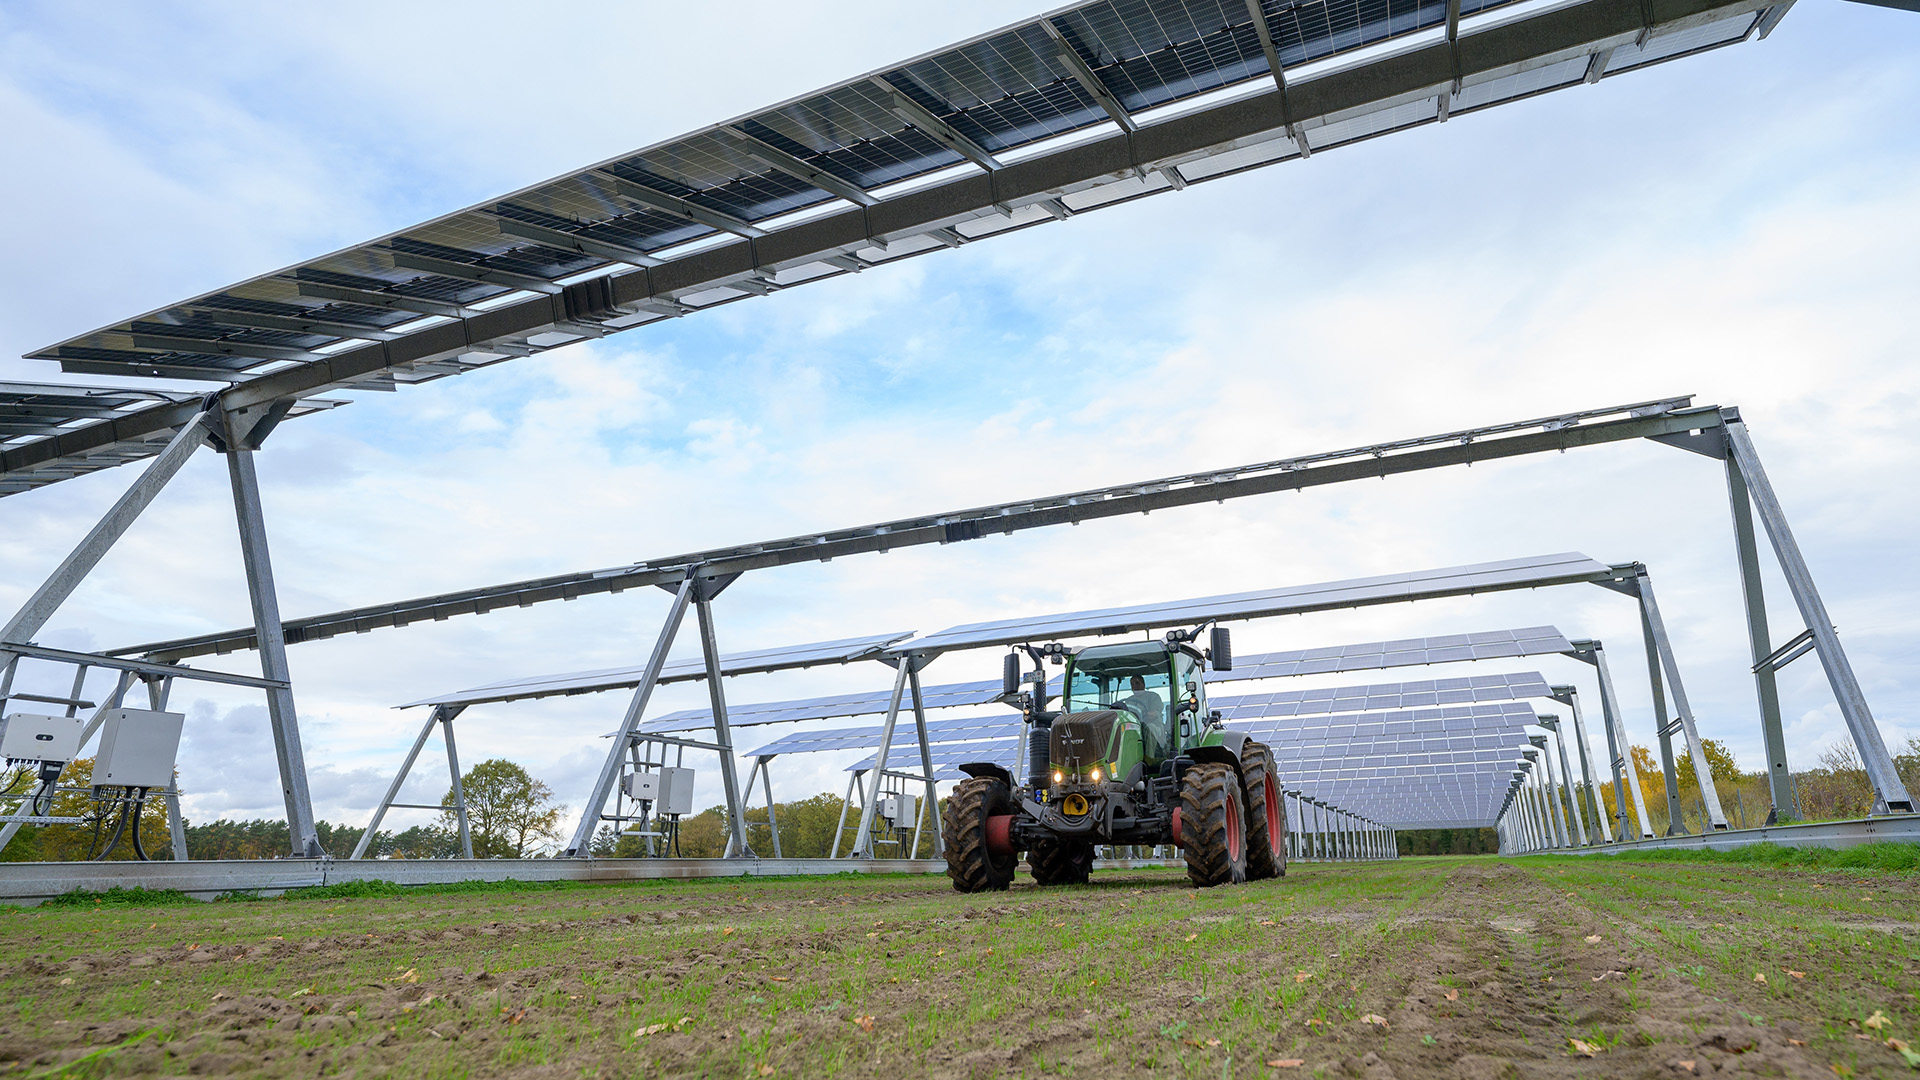 Warum es bislang wenige Solaranlagen auf Agrarland gibt